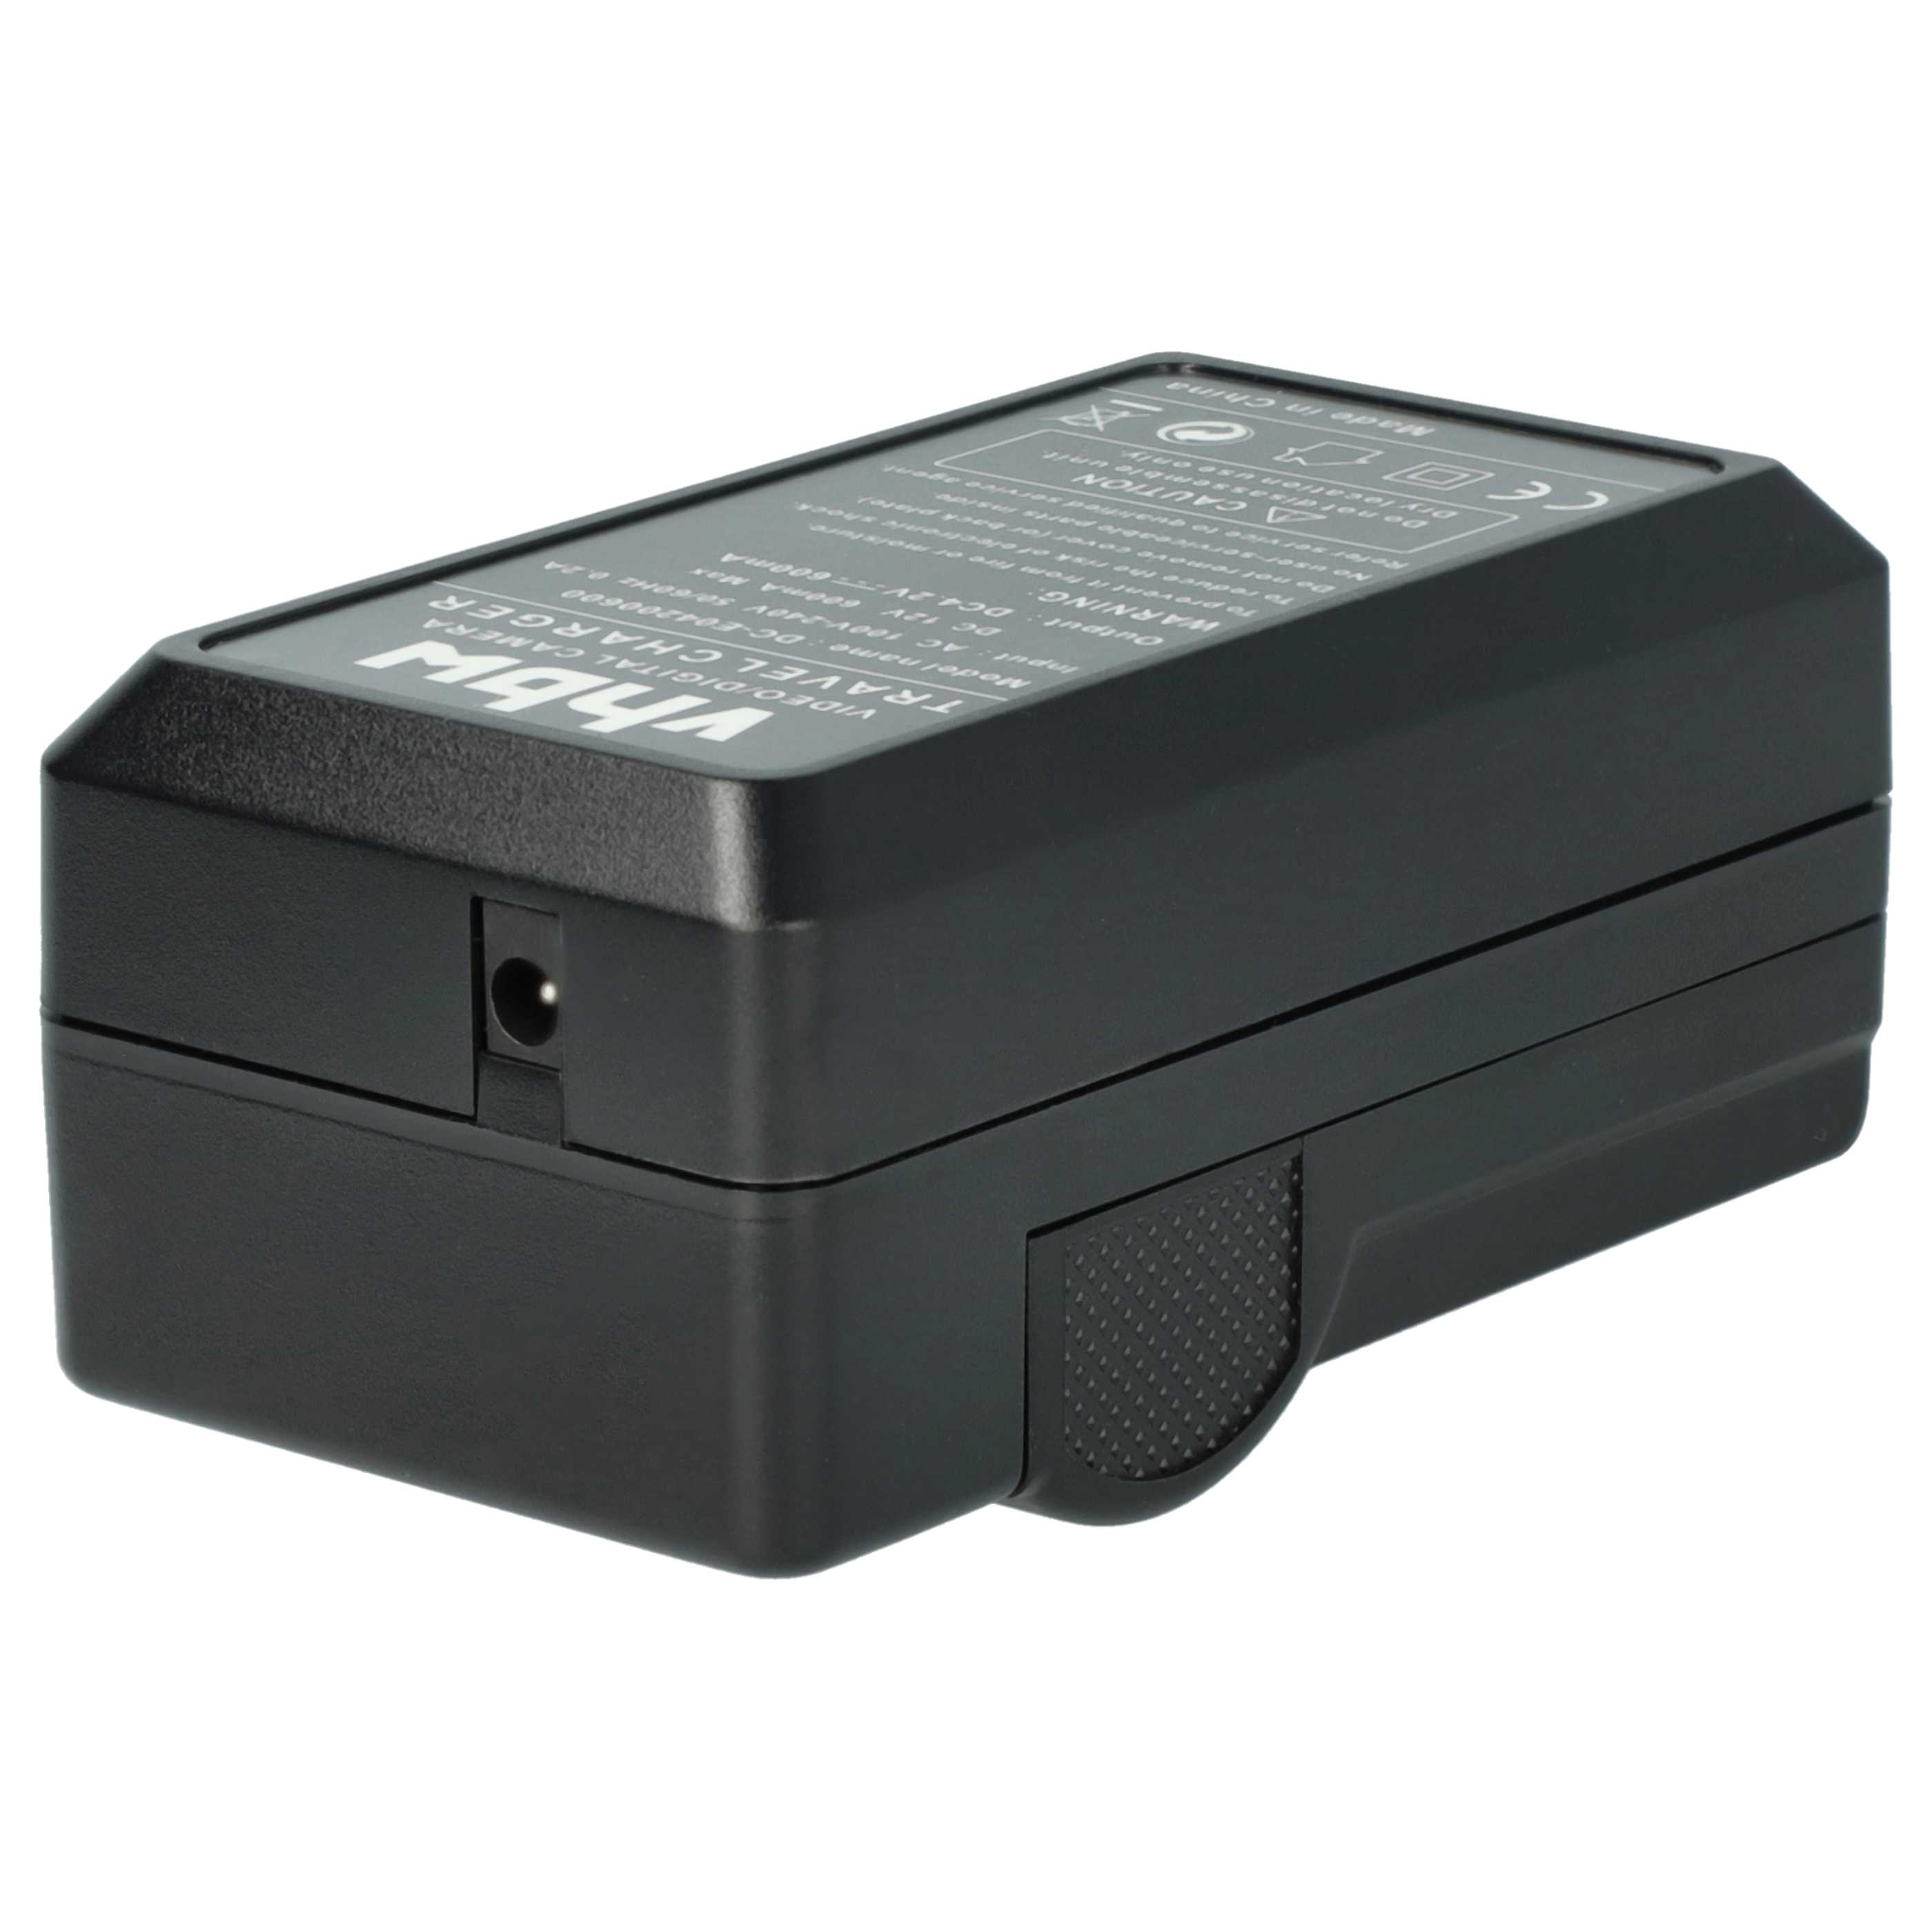 Akku Ladegerät passend für Minox Digitalkamera und weitere - 0,6 A, 4,2 V